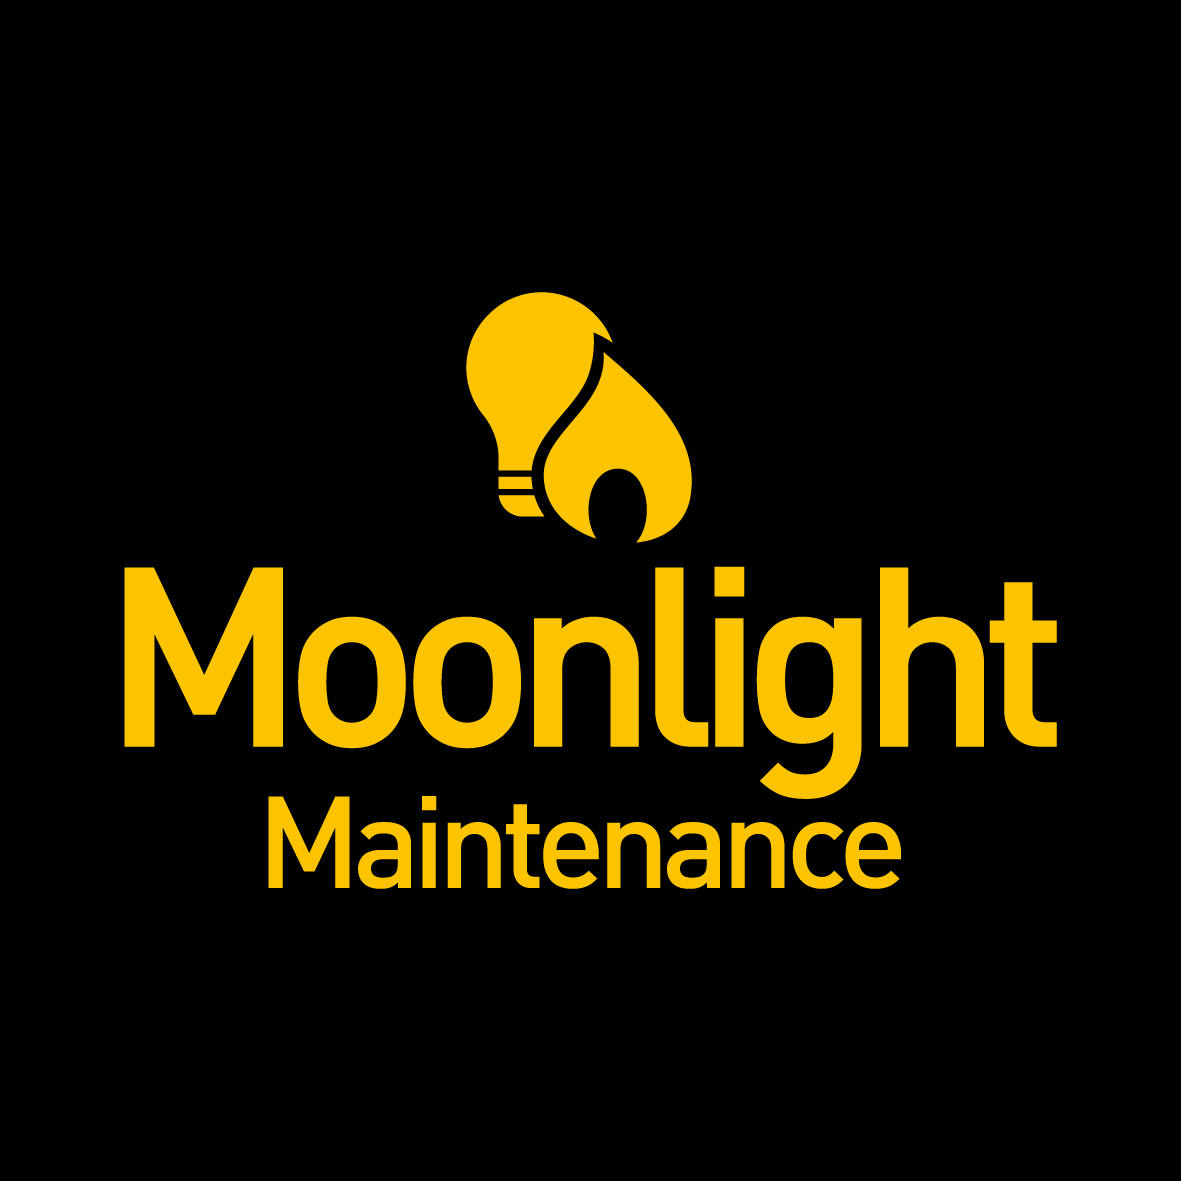 Moonlight Maintenance